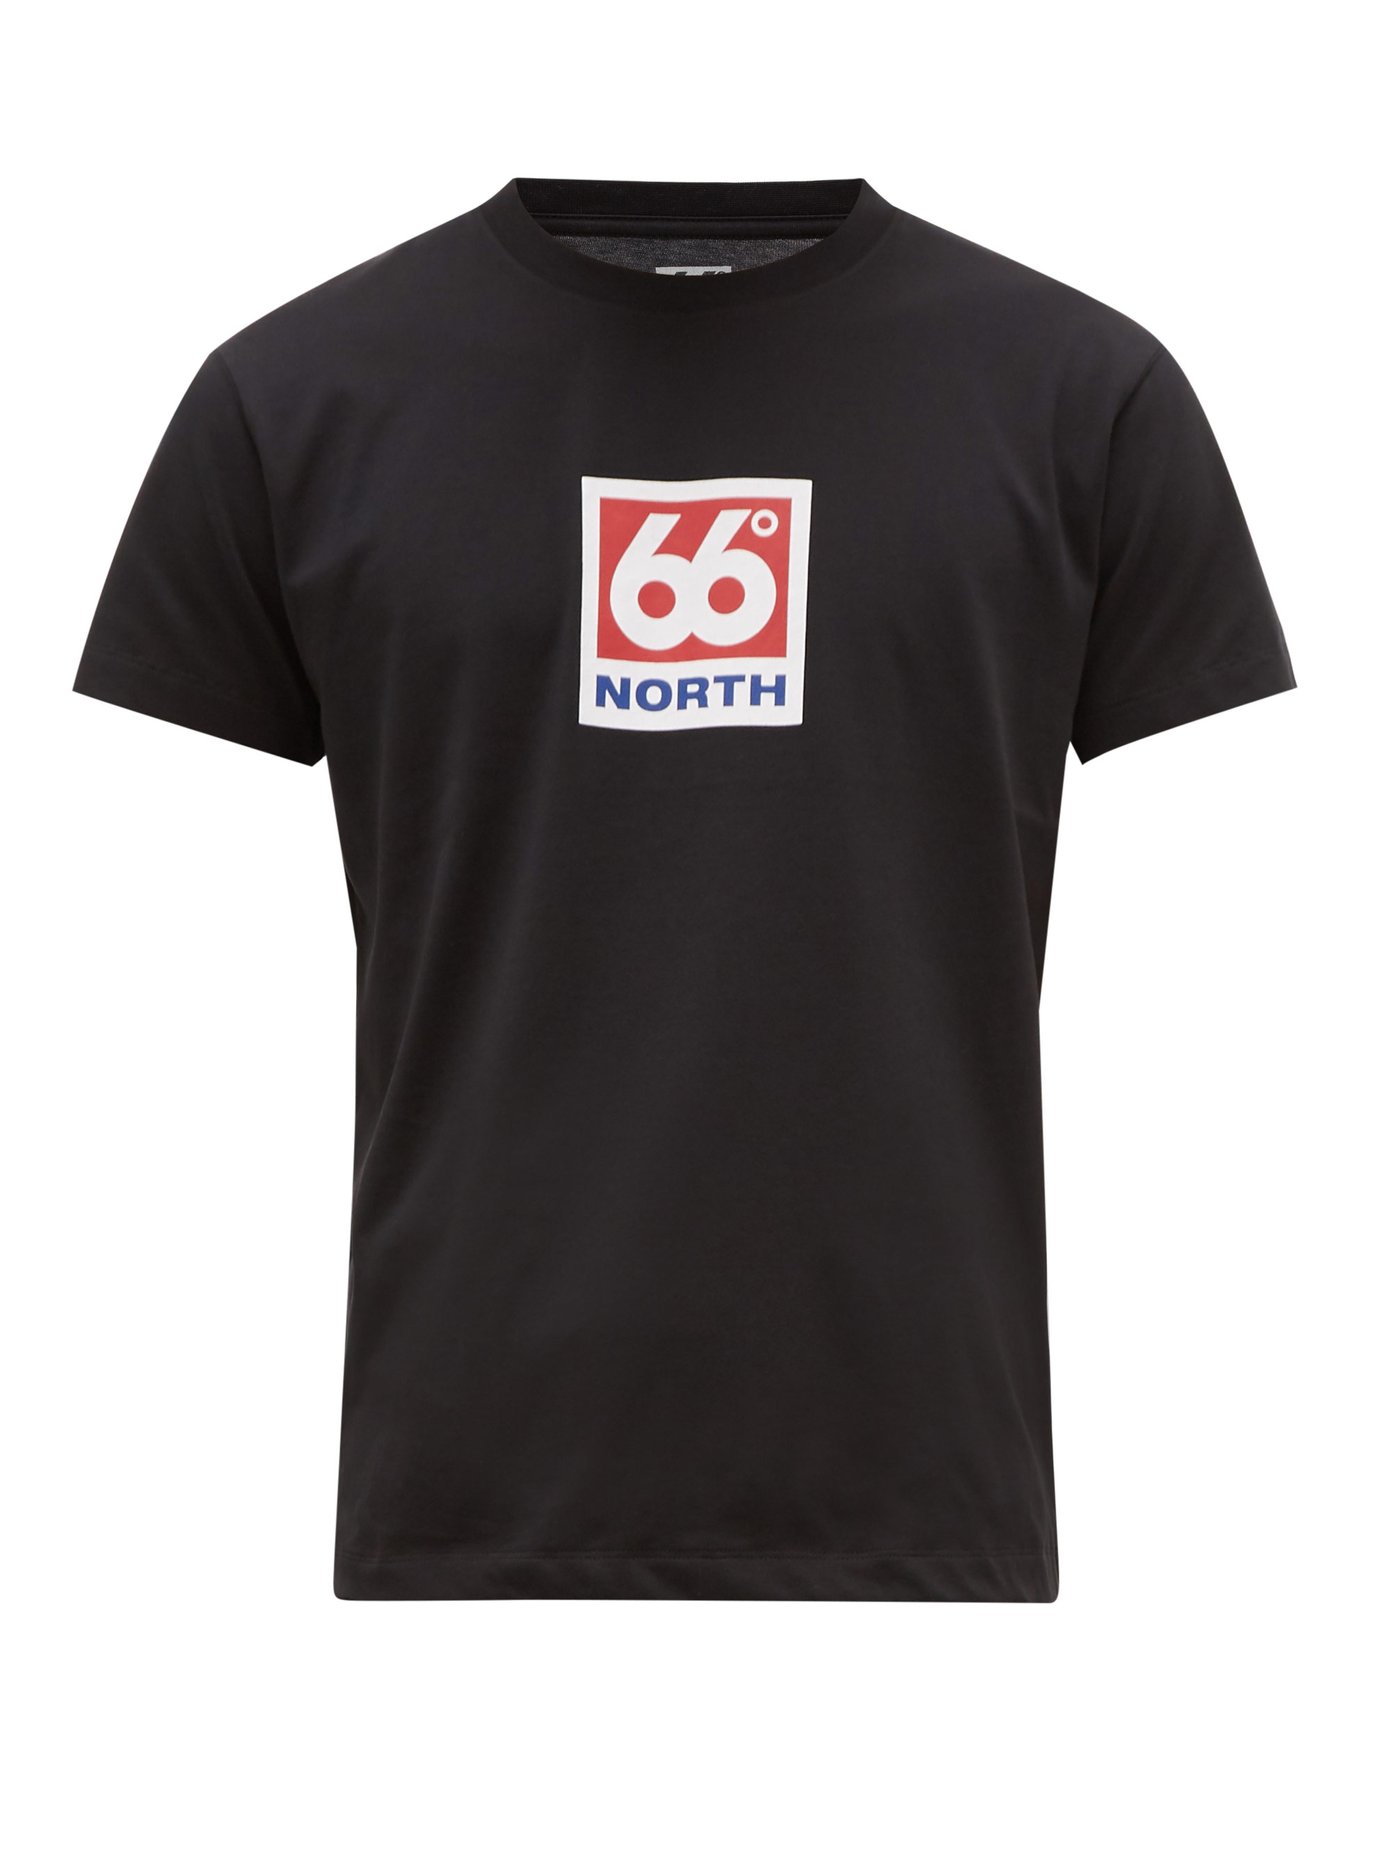 t shirt 66 north